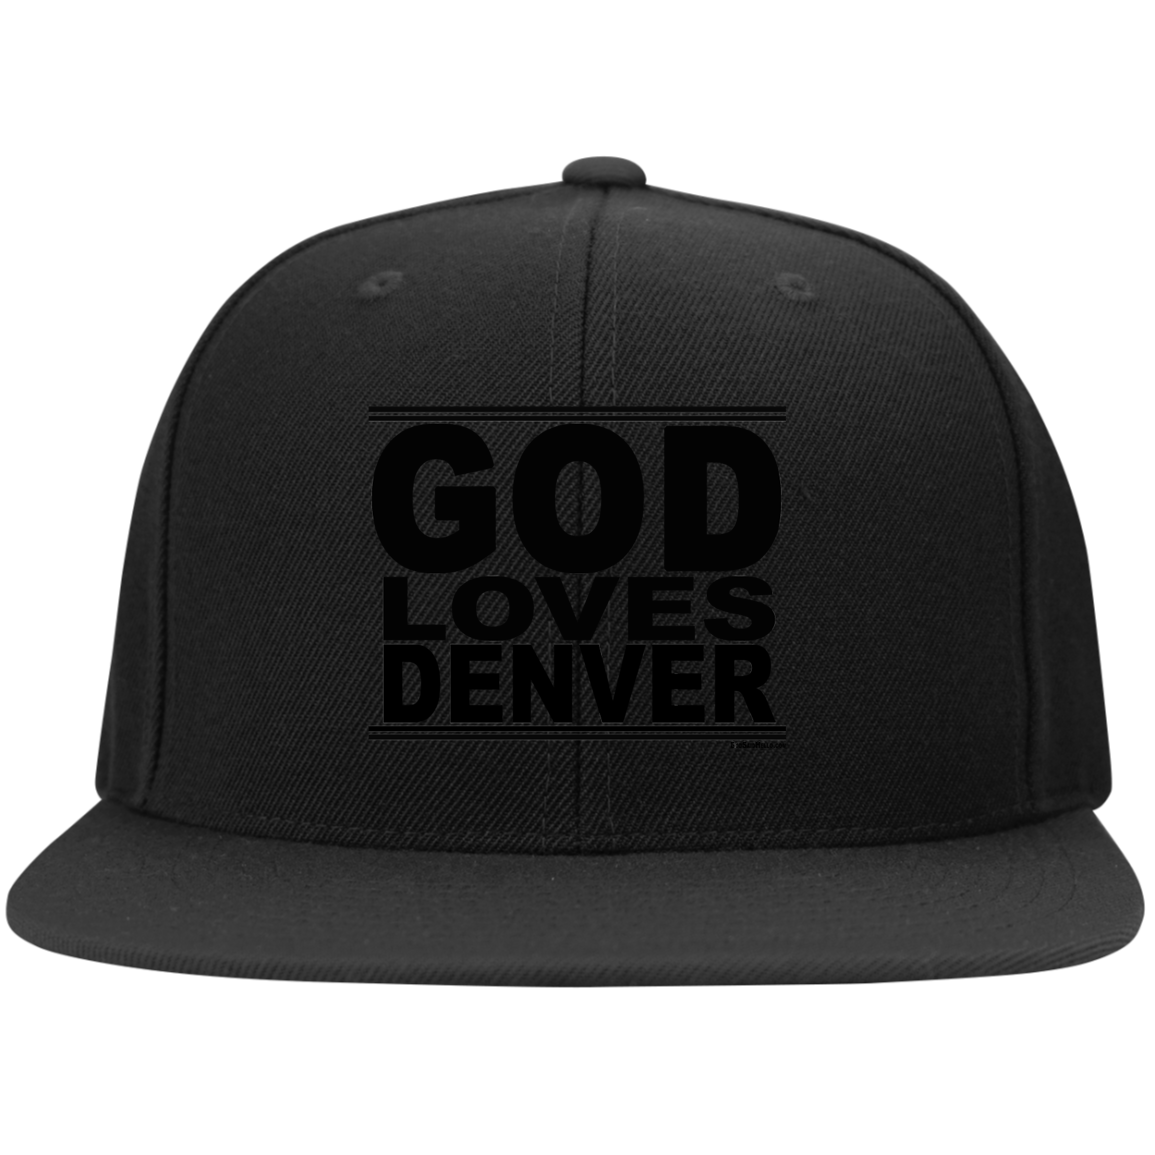 #GodLovesDenver - Snapback Hat